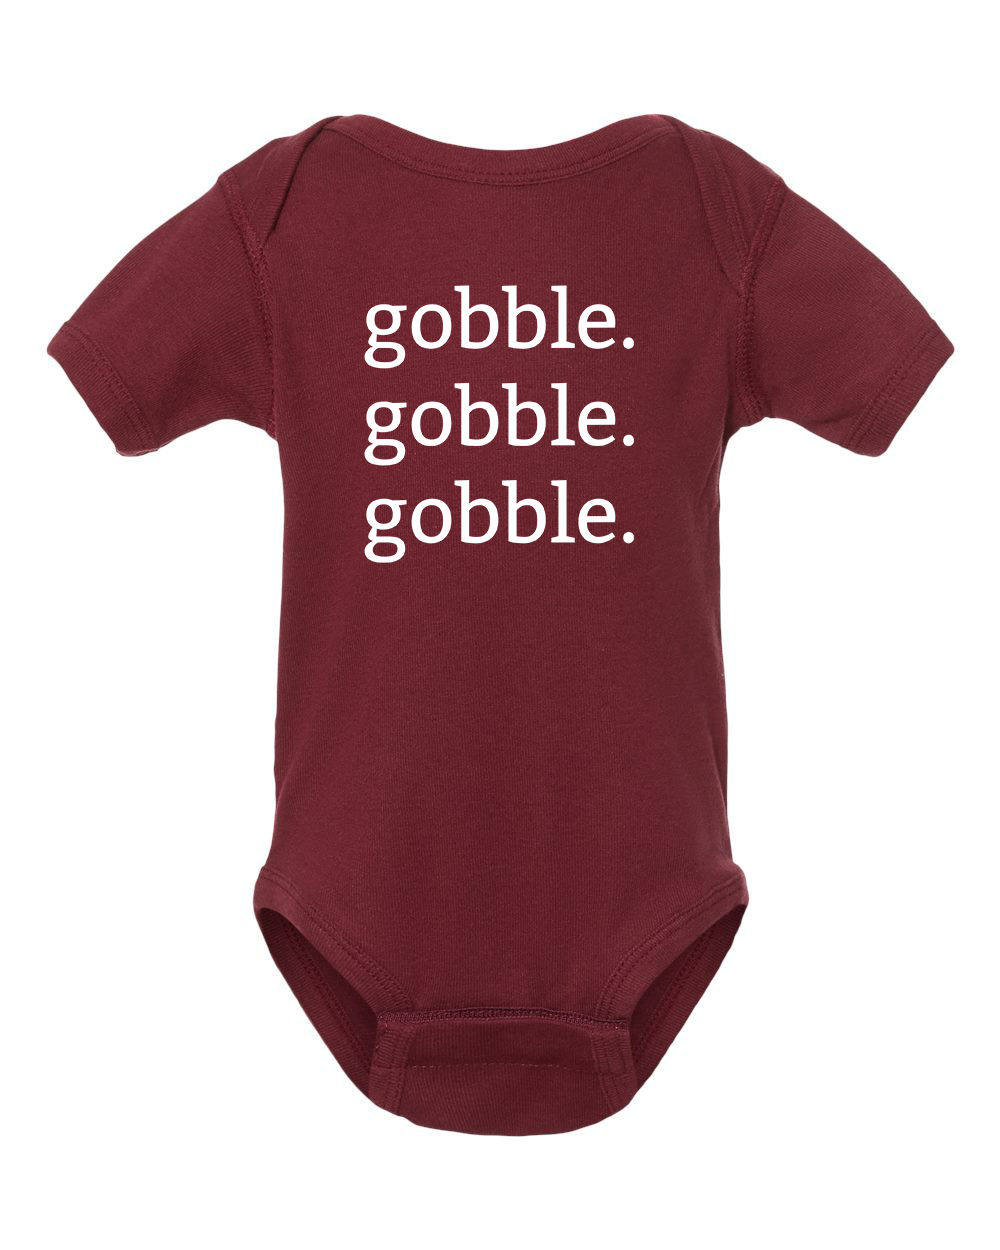 Gobble Gobble Infant Onesie - Maroon